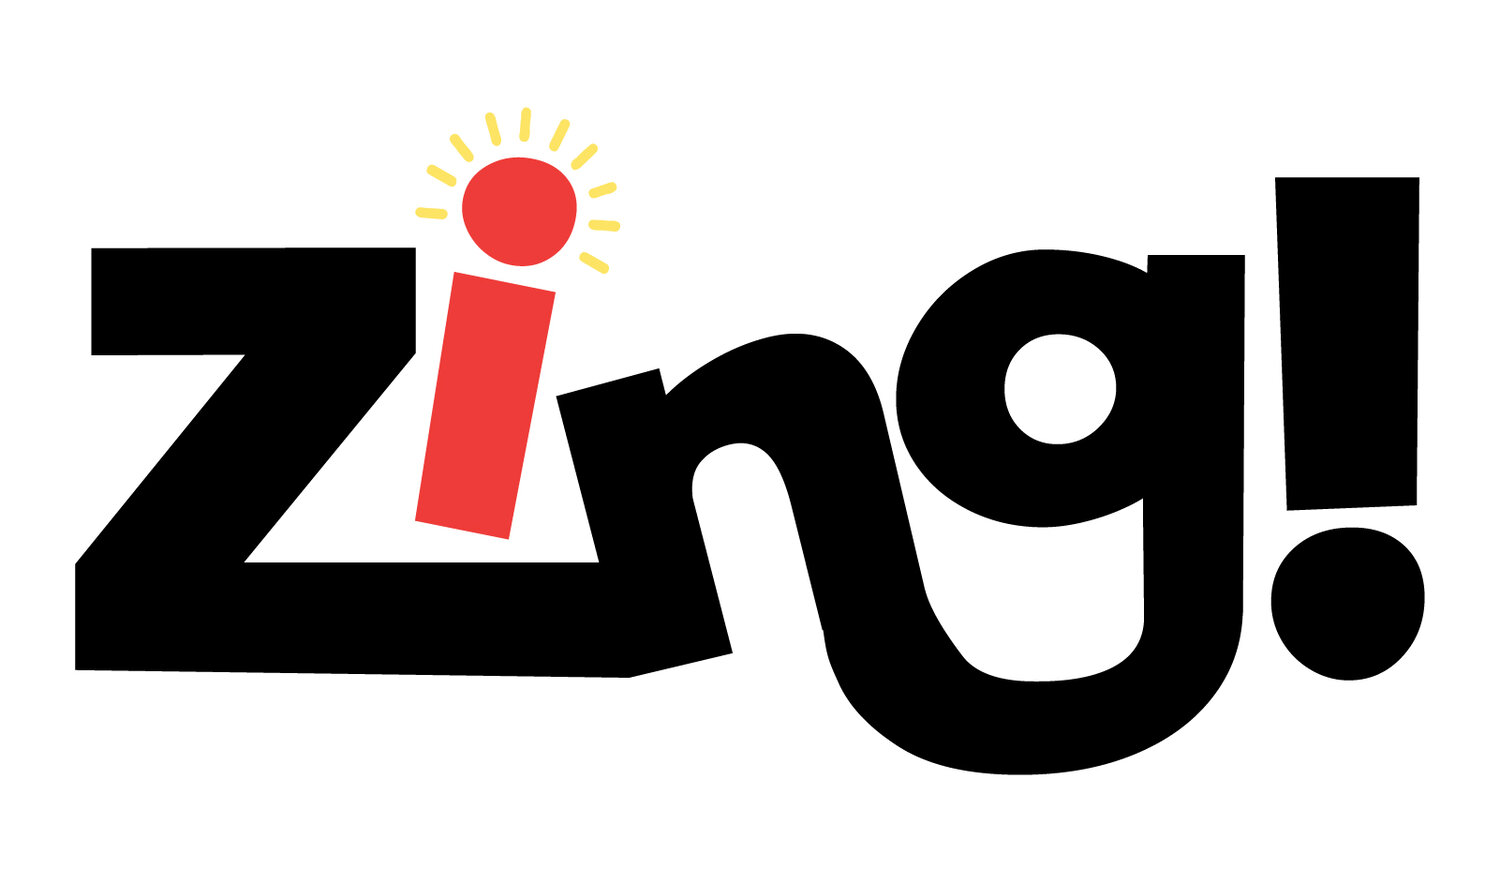 Zing!